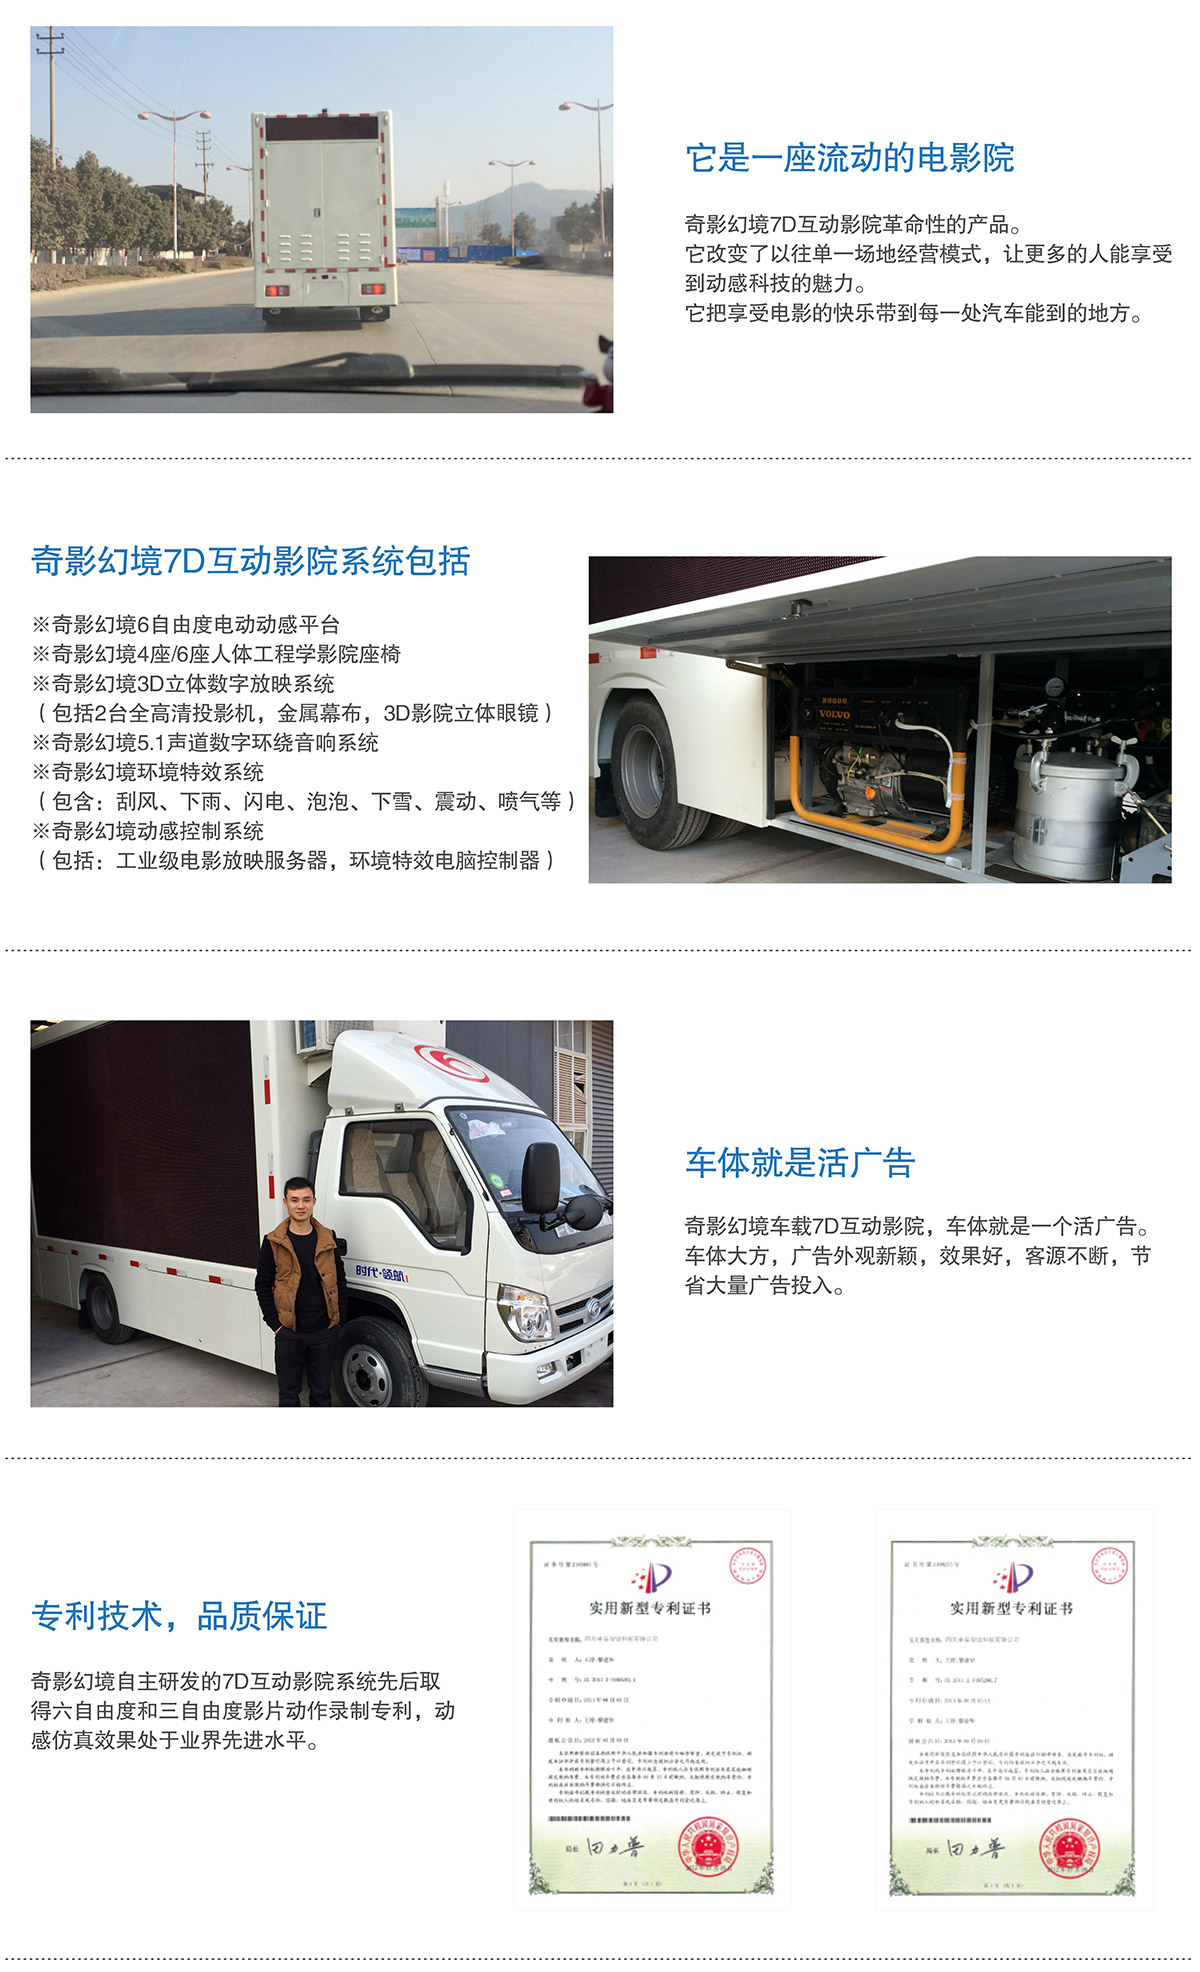 云南卓信智诚7D互动电影车就是活广告.jpg